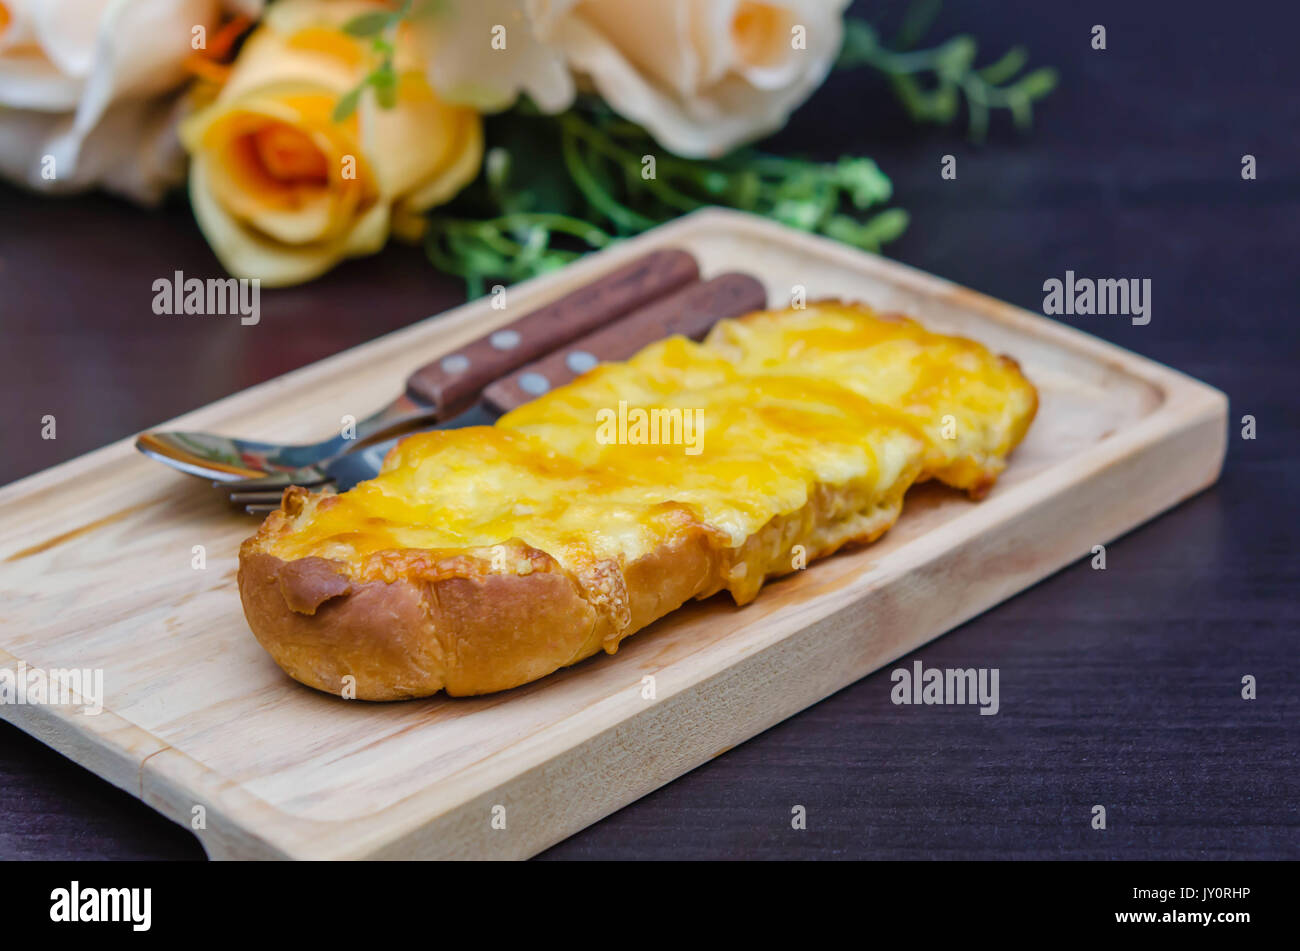 geröstetes hausgemachtes Knoblauchbrot, geschmolzenem Cheddar und Mozzarella, garniert mit Parmesan-Käse Stockfoto